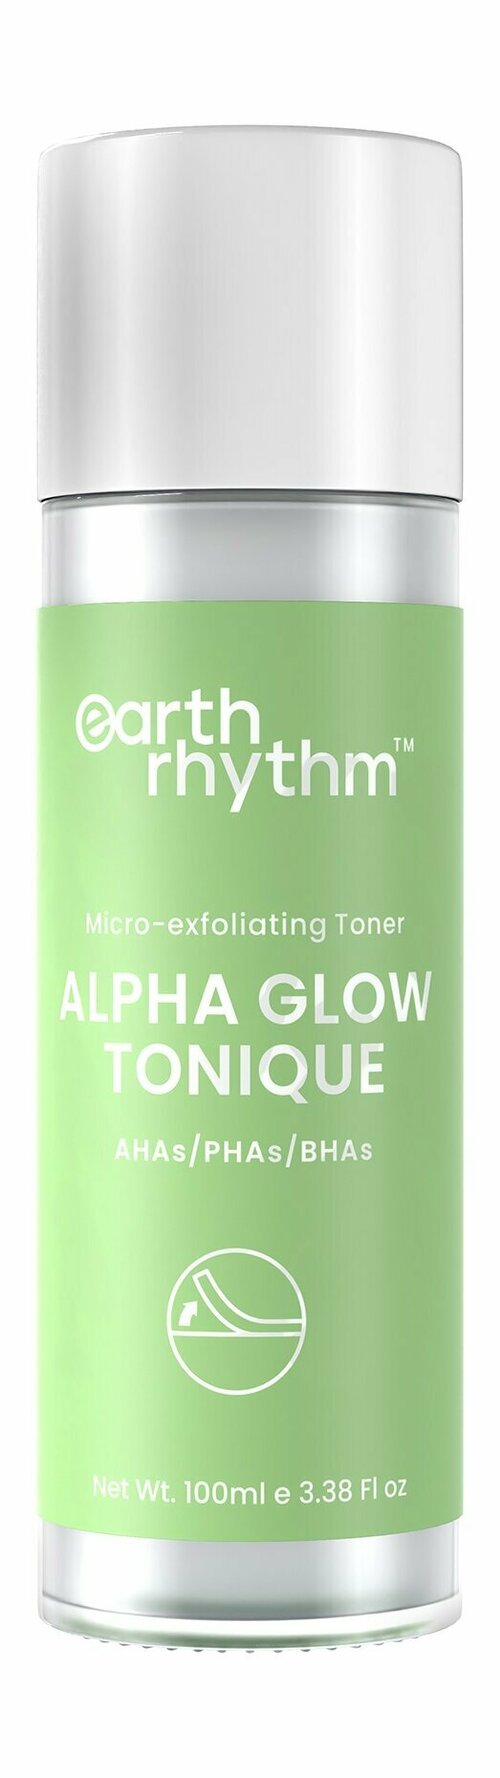 EARTH RHYTHM Alpha Glow Tonique Тоник для лица, 100 мл